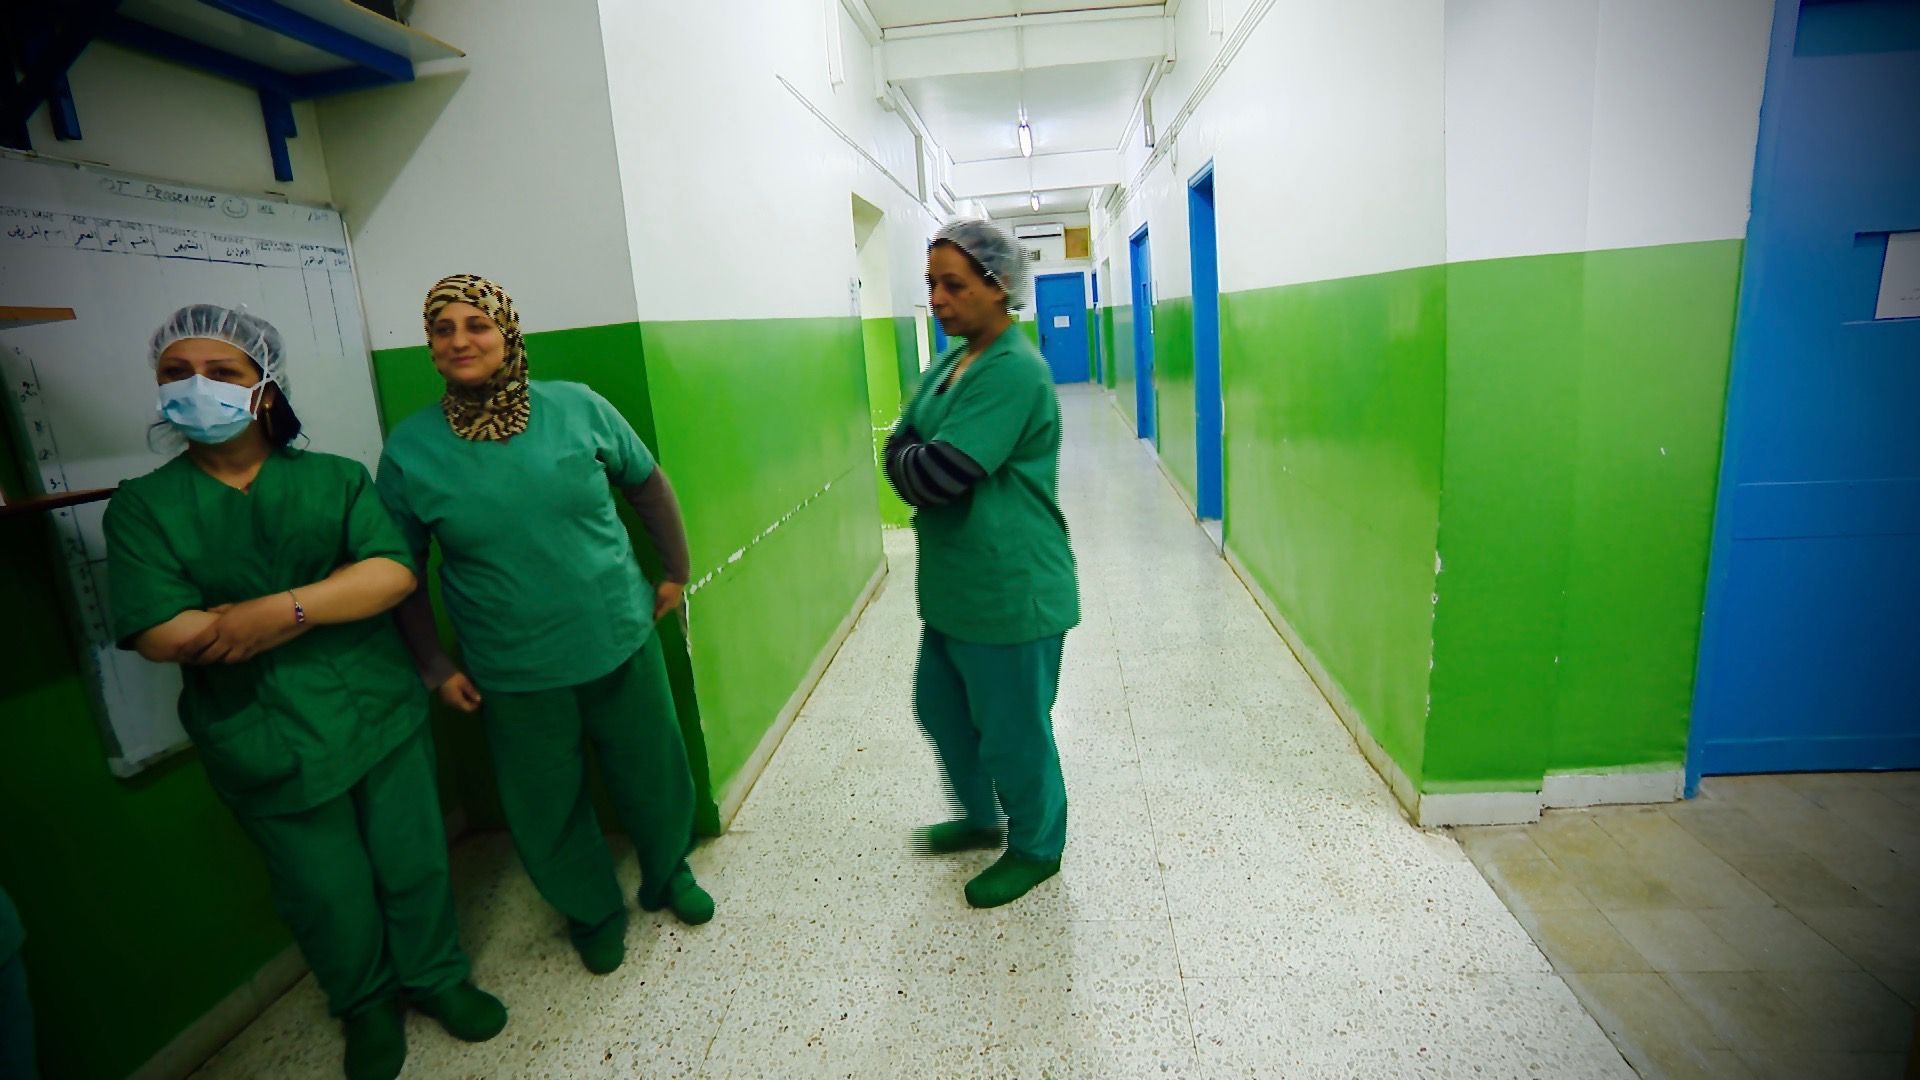 Les infirmières de l'hôpital d'Hassaké, nous donnent leur ressenti dans les couloirs du quartier opératoire